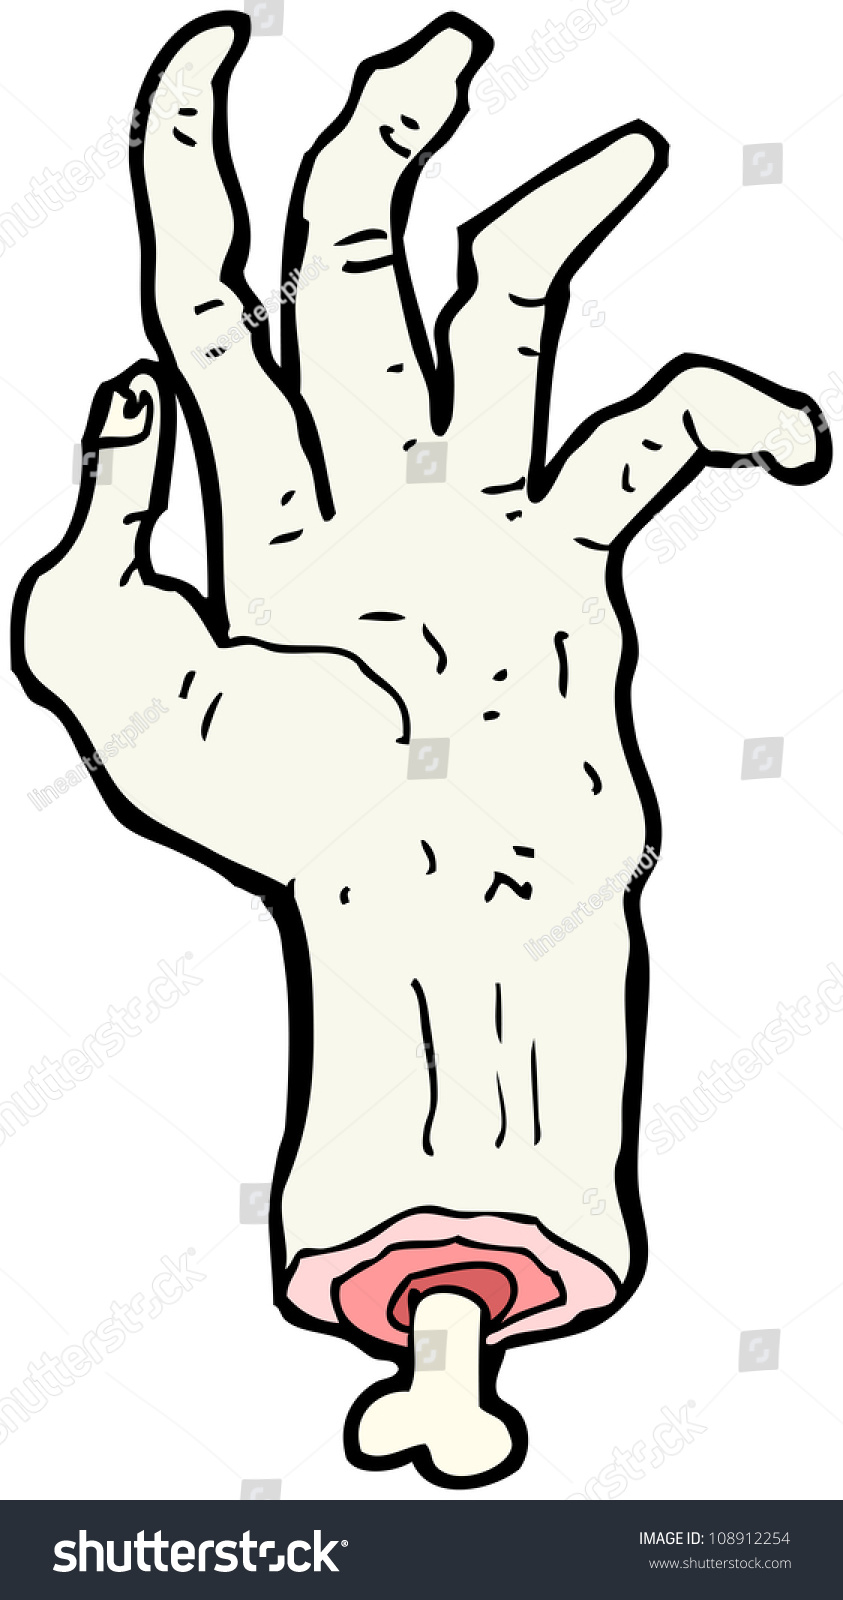 Cartoon Zombie Hand Stock Photo 108912254 : Shutterstock